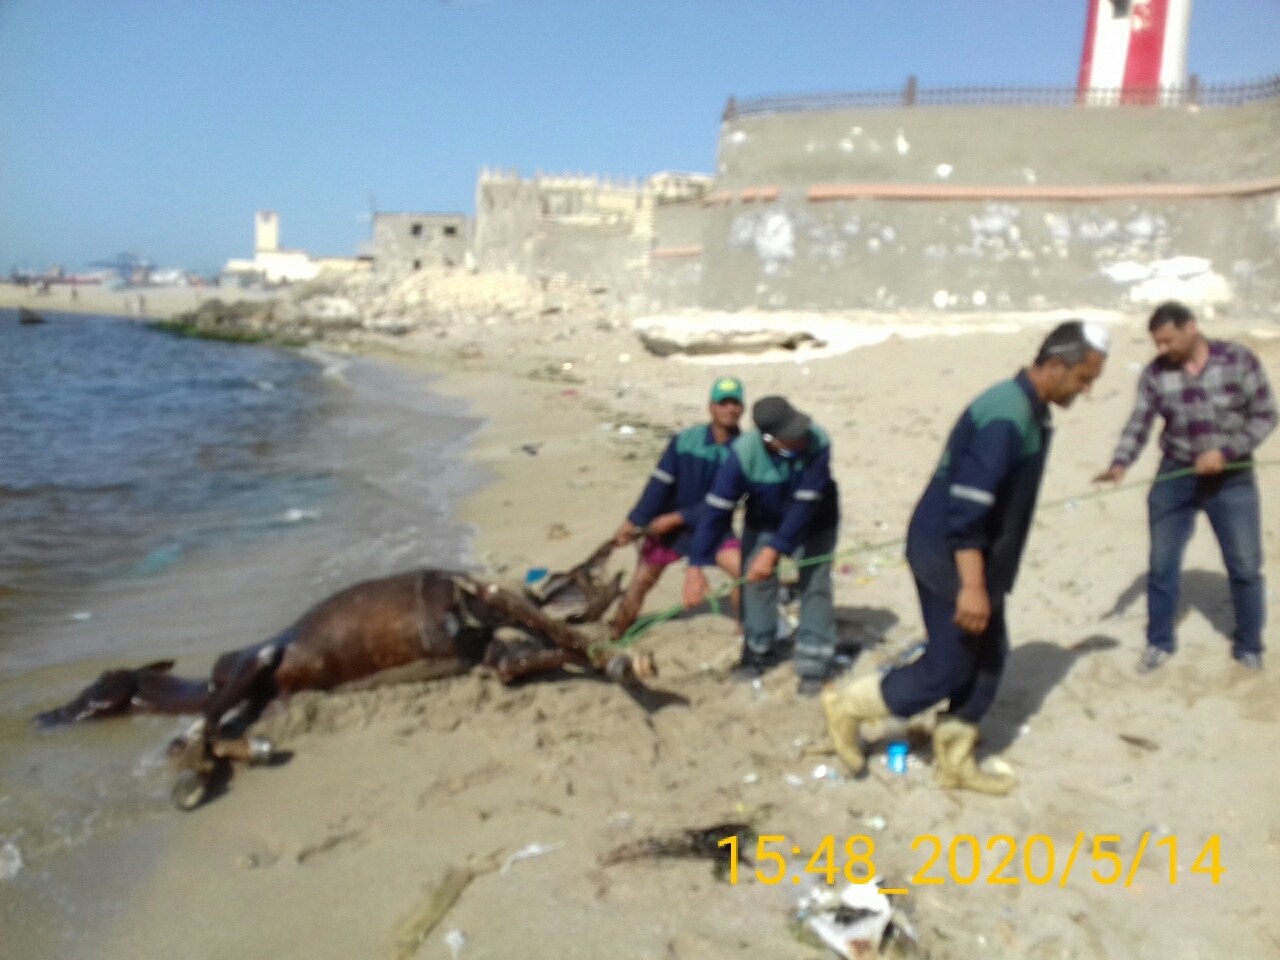   عمال نهضة مصر ترفع حصان نافق ضحية حمام ماء بشاطئ المكس